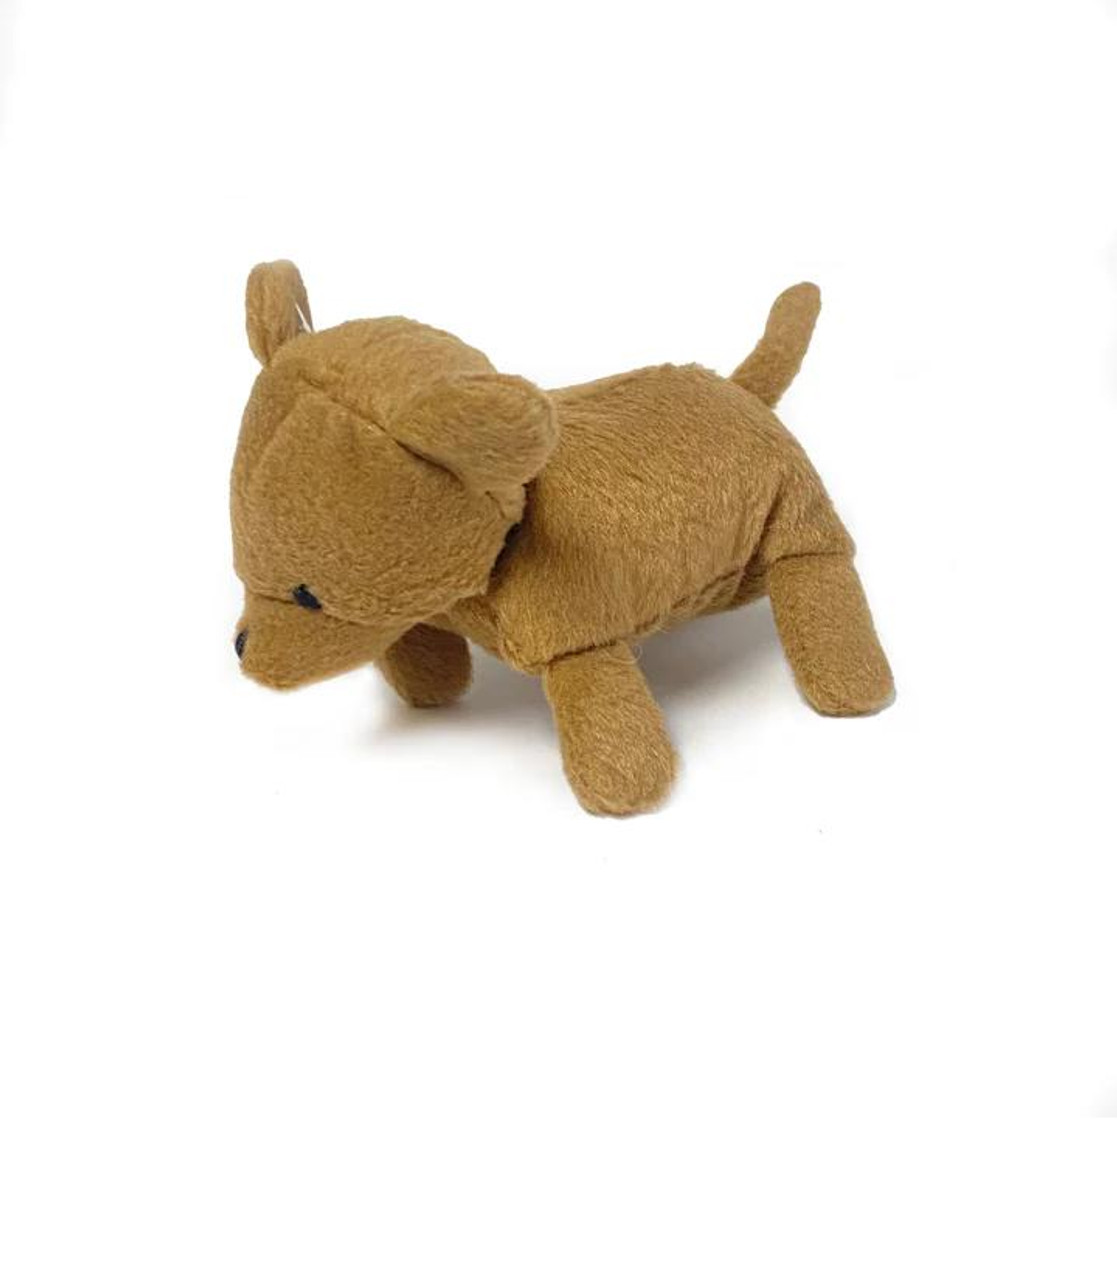  Oscar Newman Chihuahua Pipsqueak Toy 